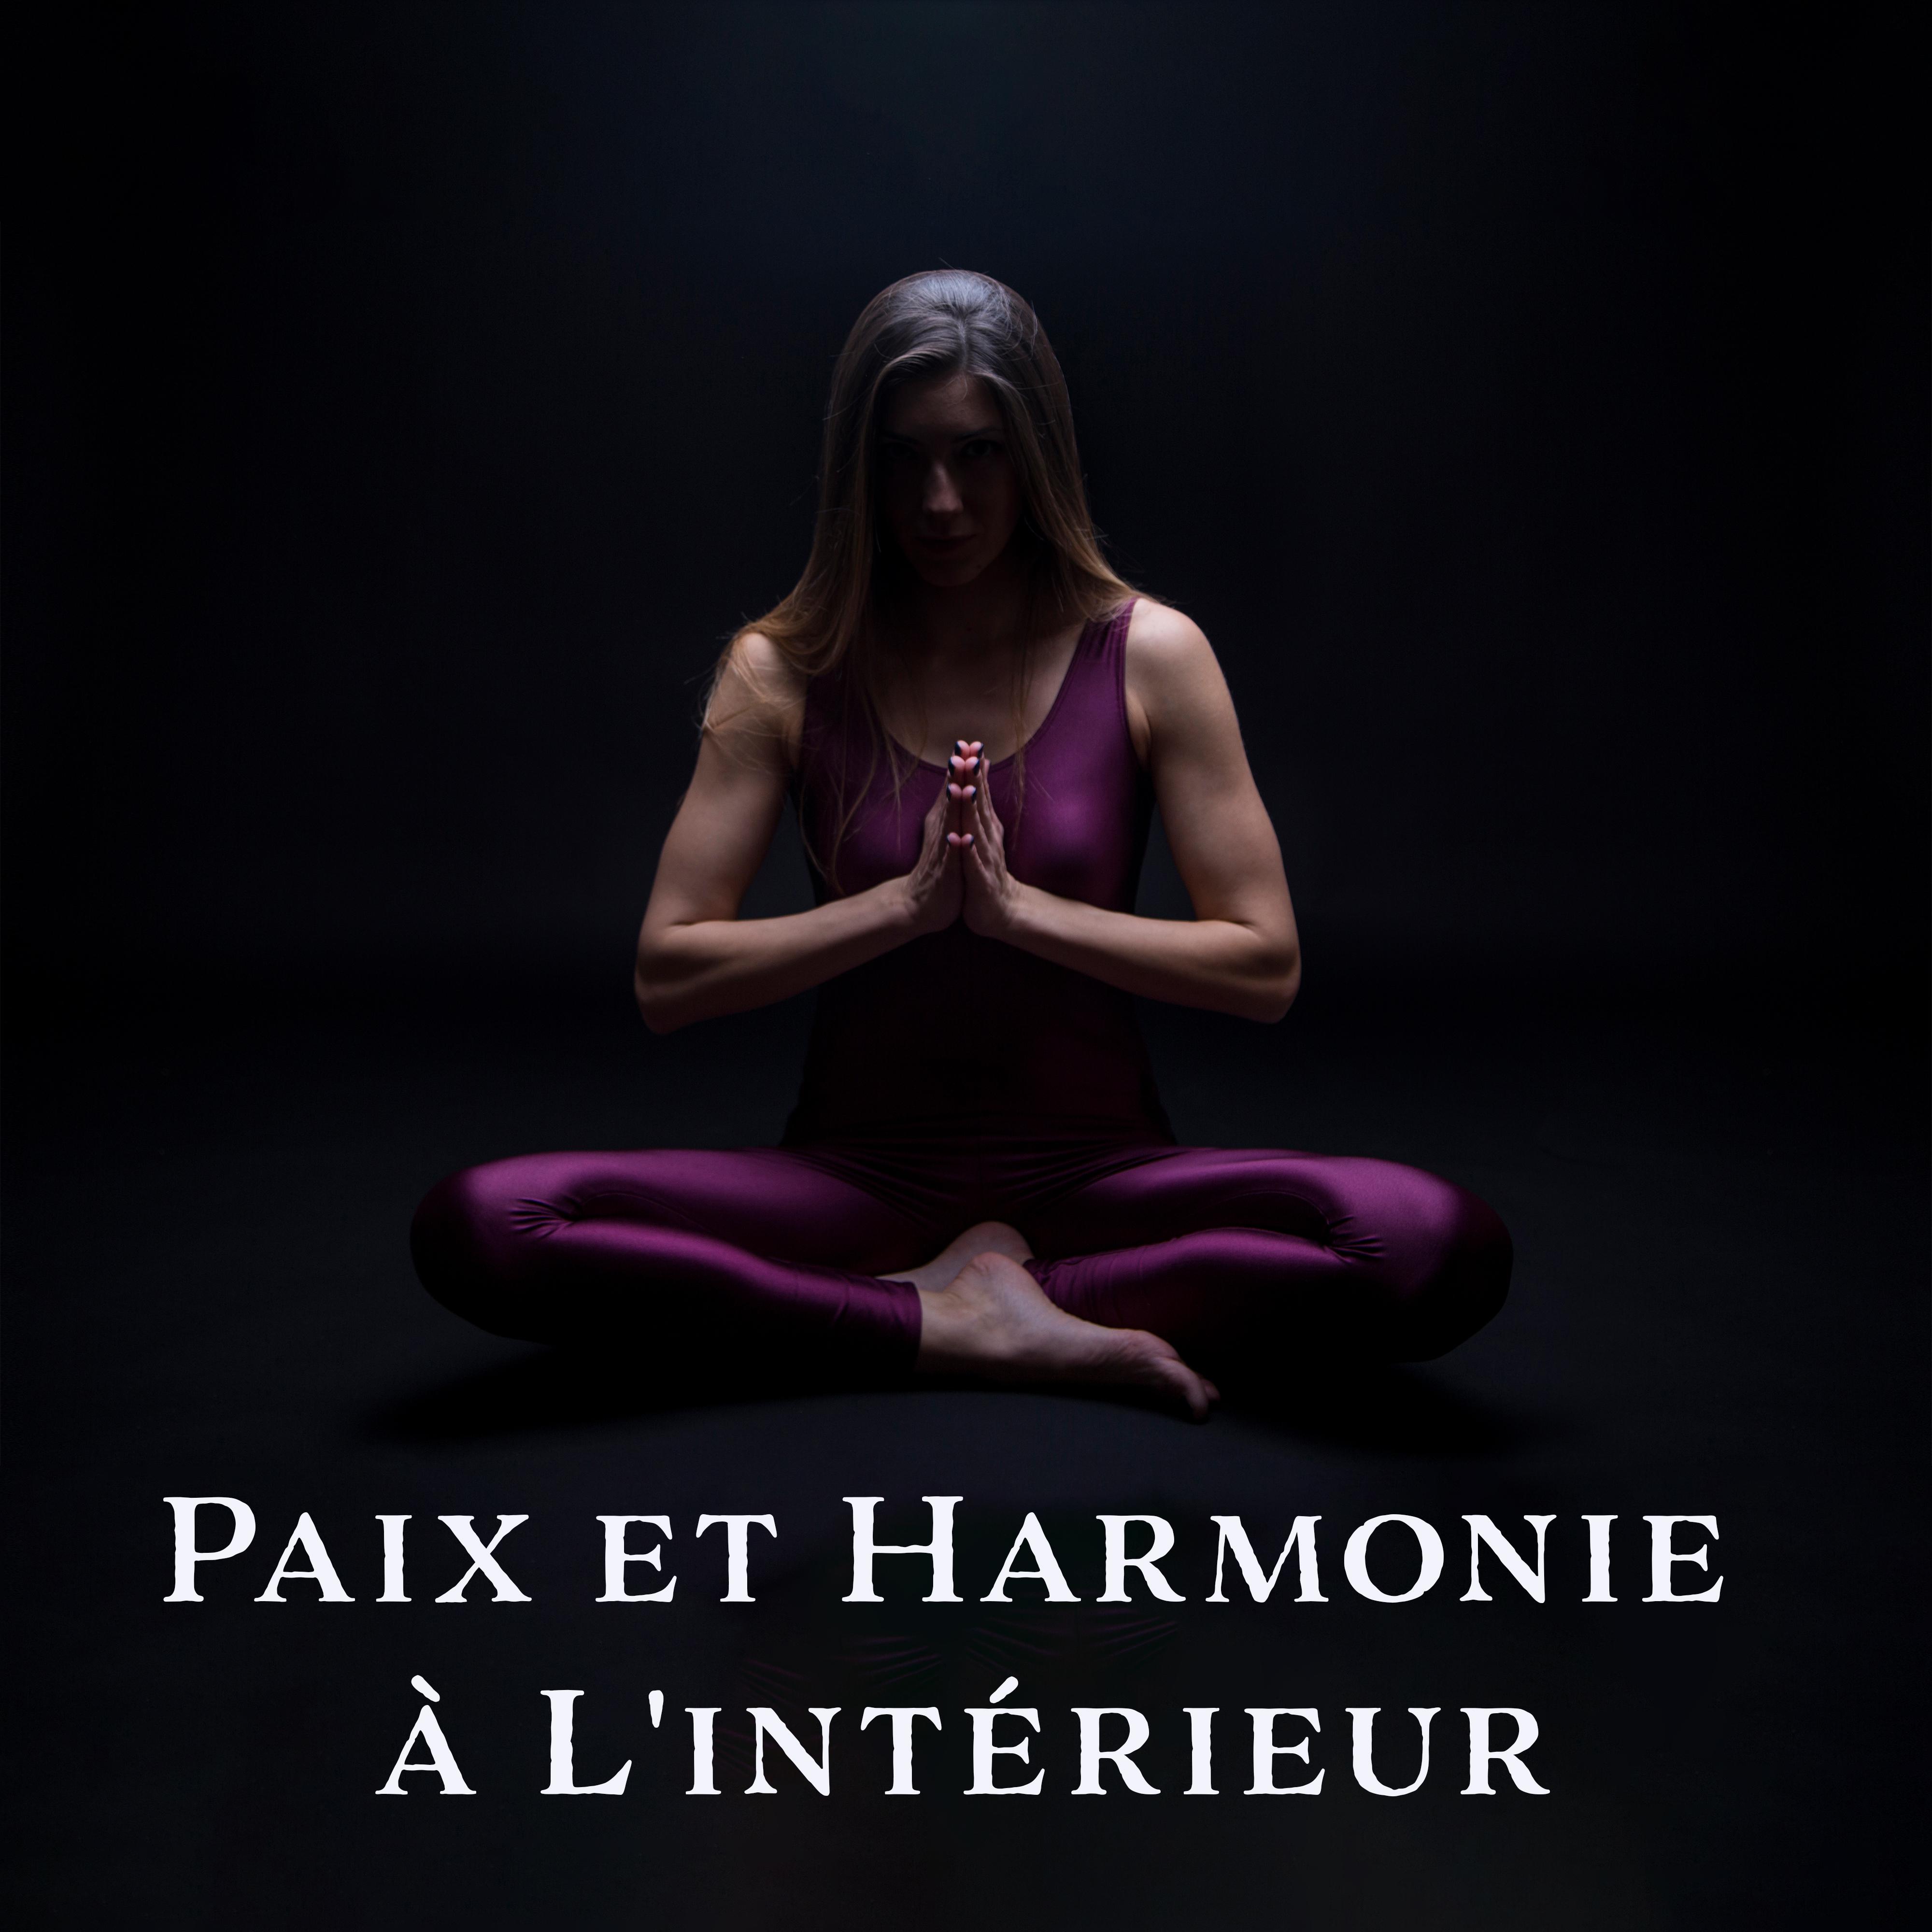 Paix et Harmonie a L' inte rieur : Musique pour la Me ditation, Yoga et Exercices et Spa